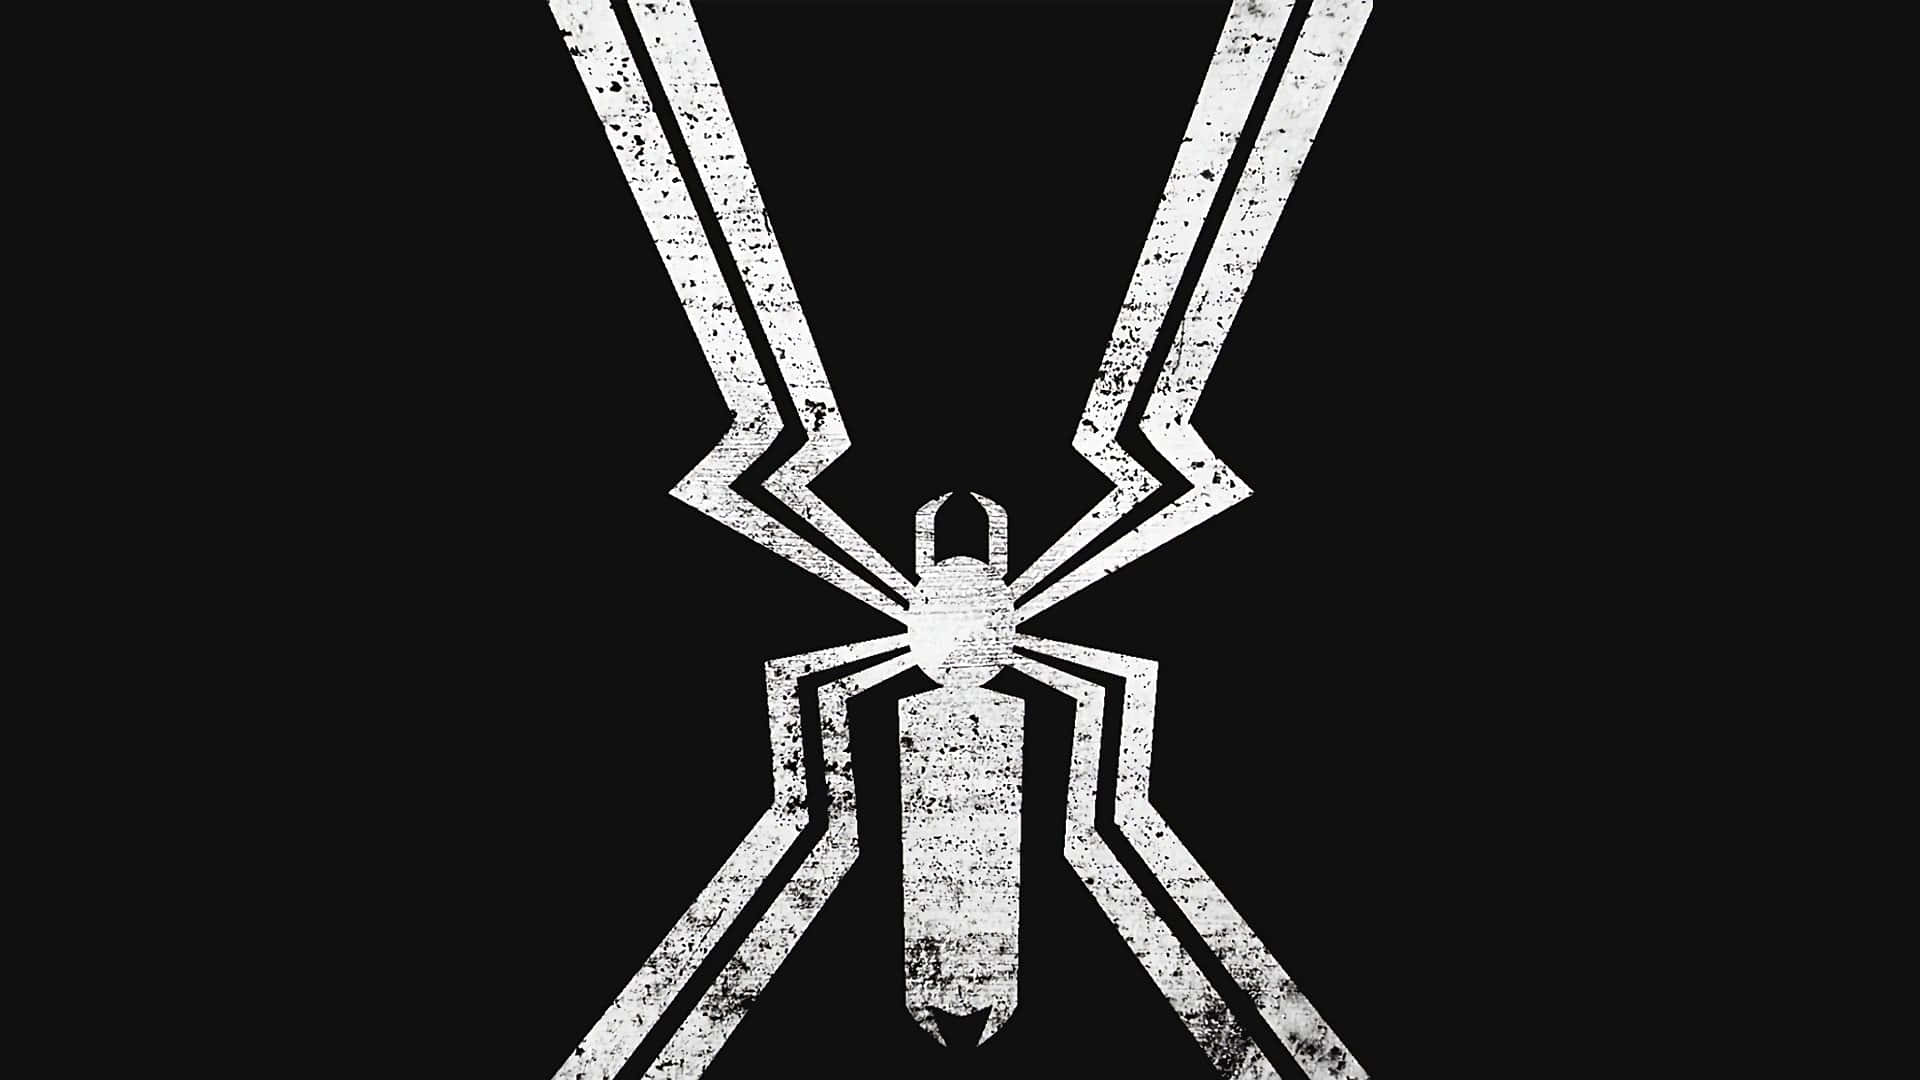 Logotipode Venom Sobre Un Fondo Oscuro De Grunge. Fondo de pantalla